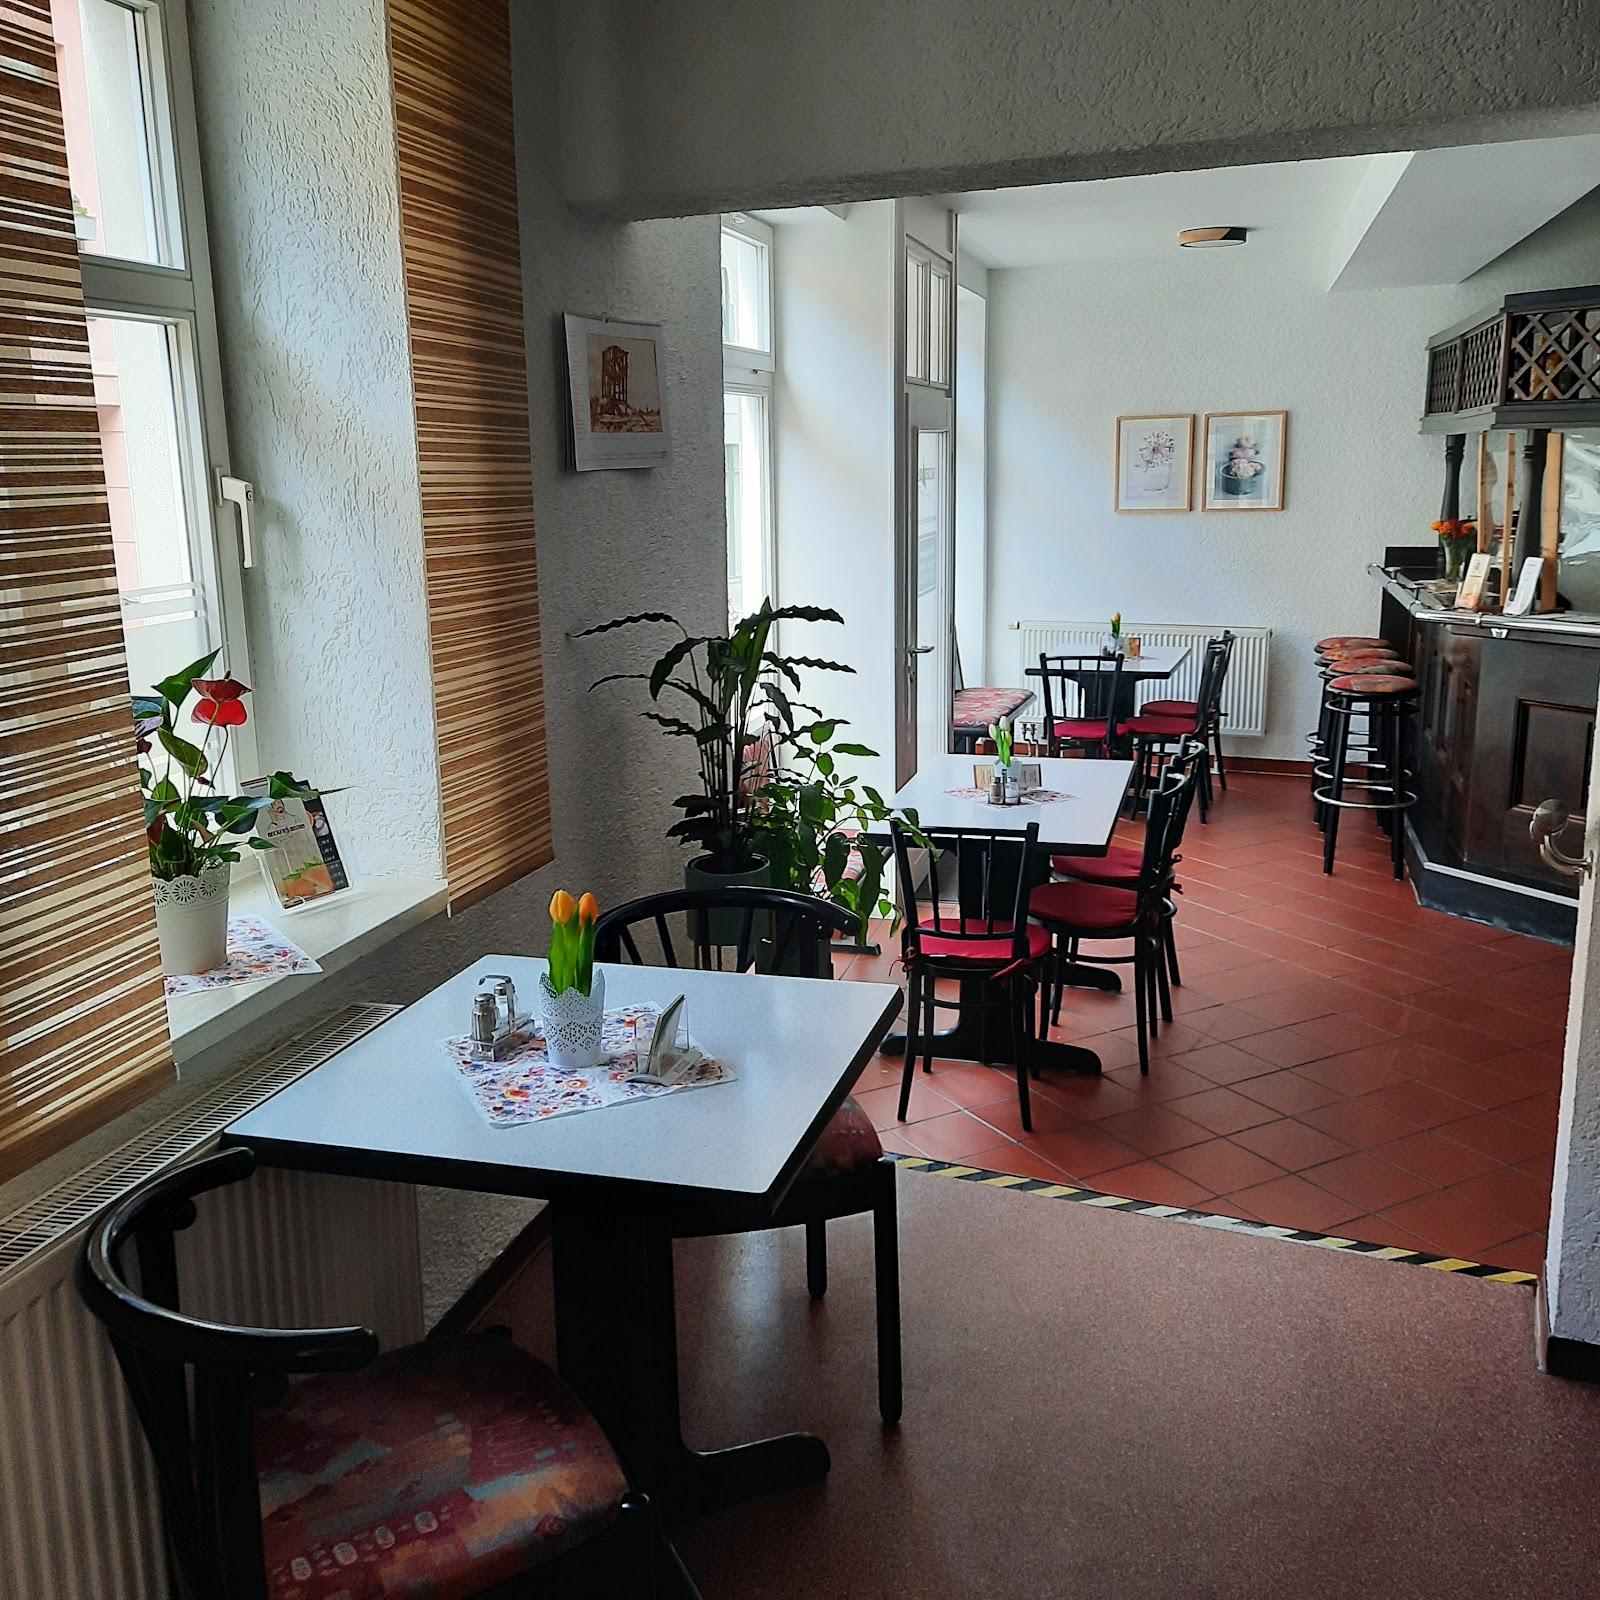 Restaurant "Beckers Bistro" in Köthen (Anhalt)